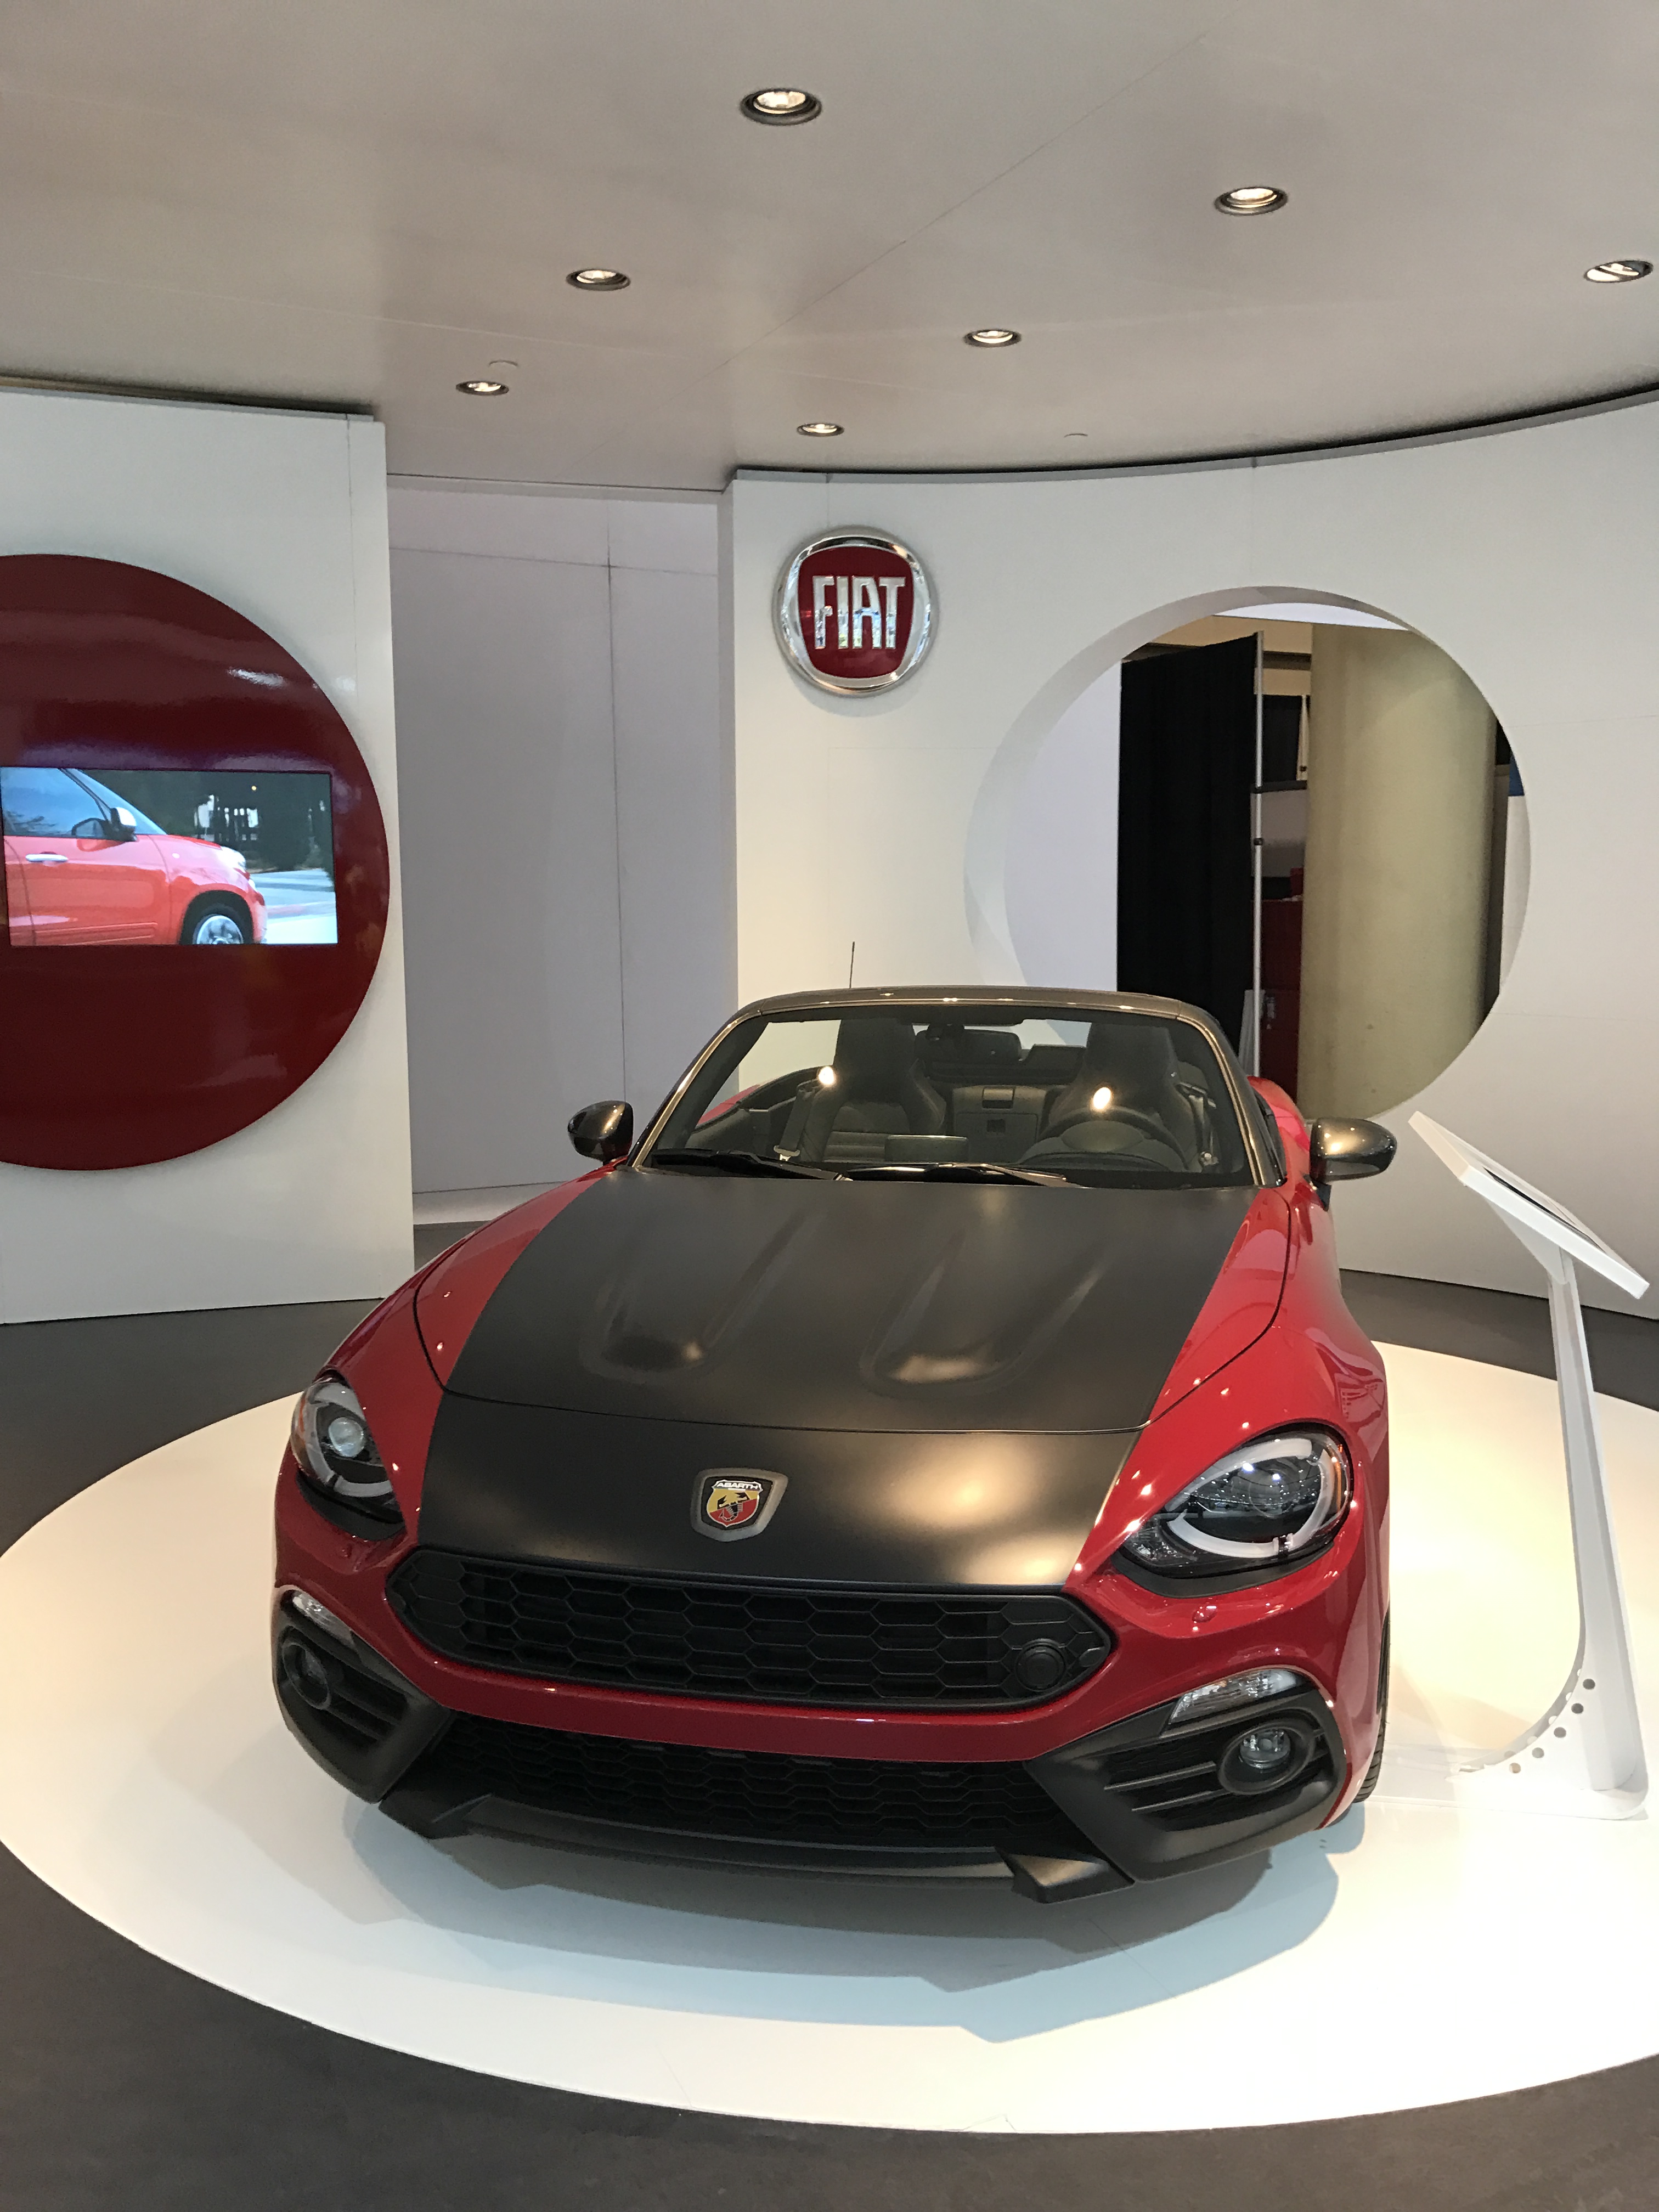 Fiat - Canadian International Autoshow #CIAS2017